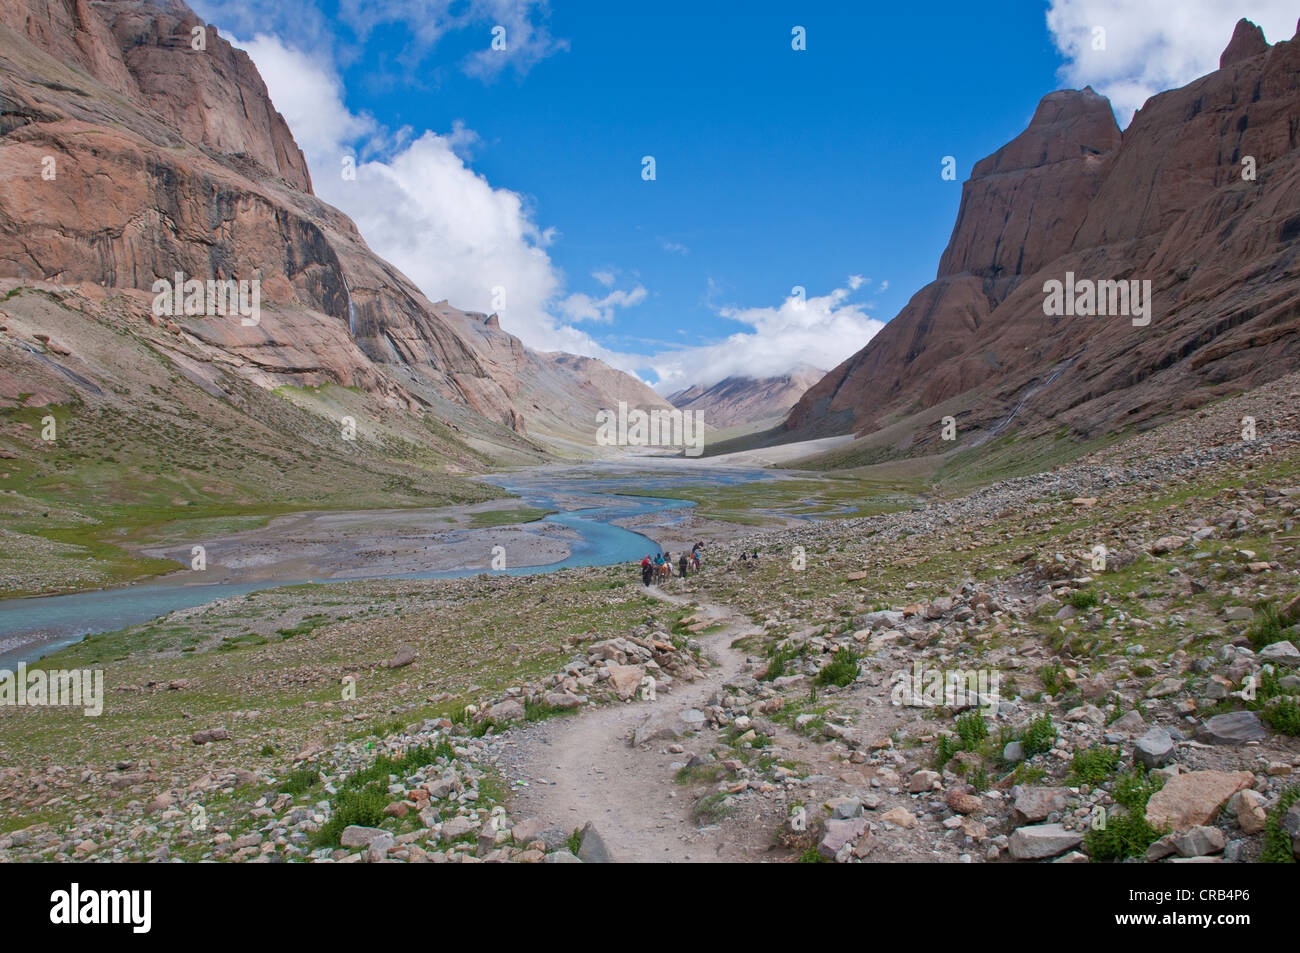 Kailash Kora camino de peregrinación, en el oeste de Tíbet, Tíbet, Asia Foto de stock